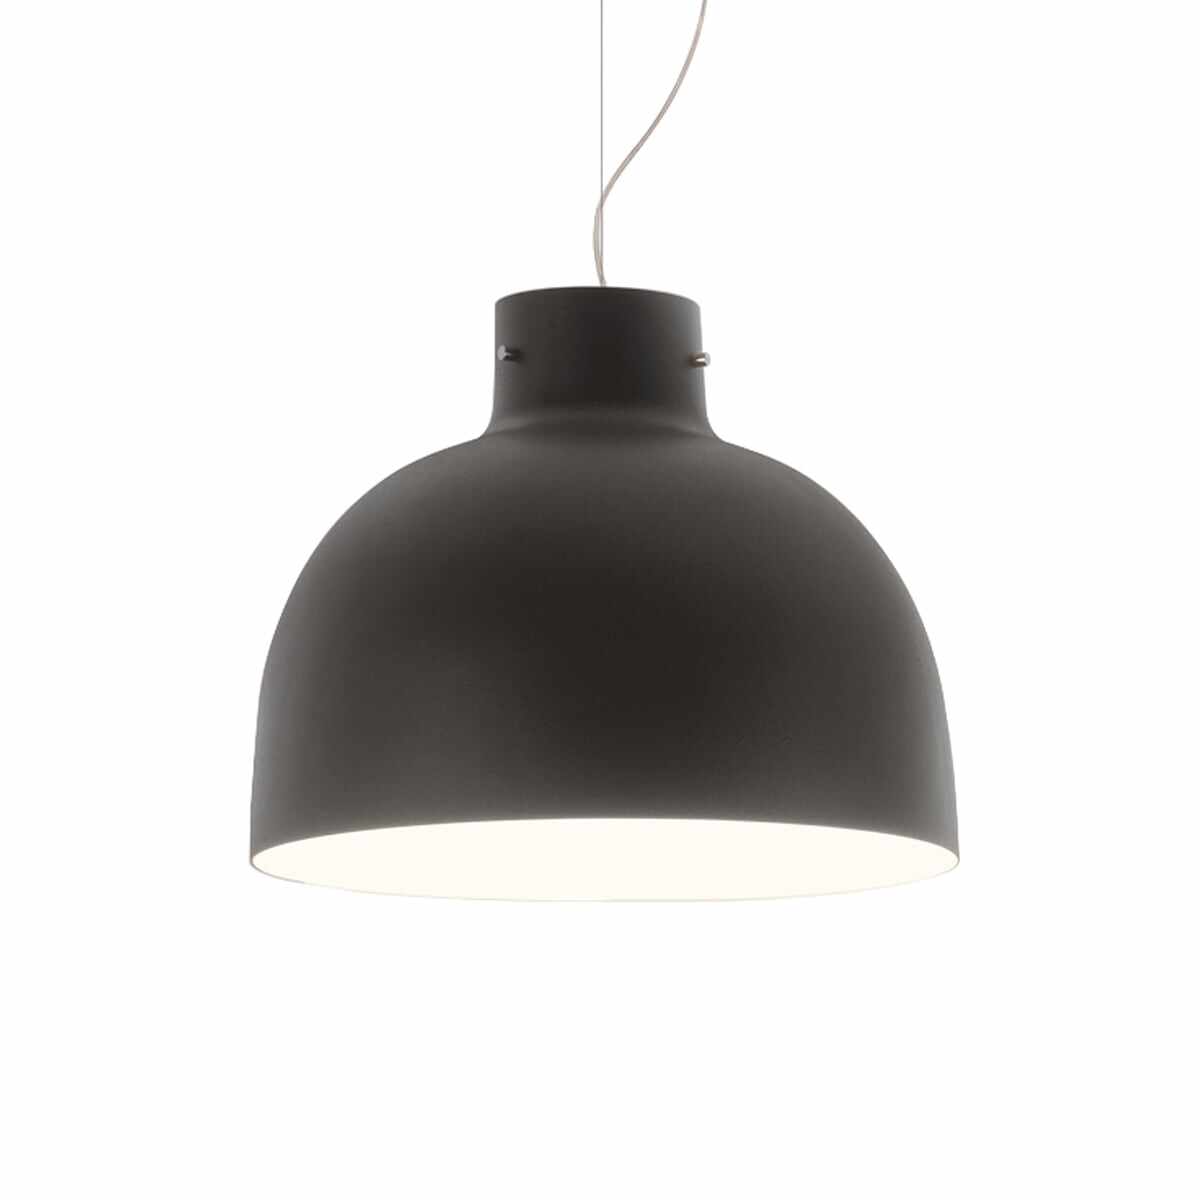 Suspensie Kartell Bellissima design Ferruccio Laviani LED 15W d50cm negru